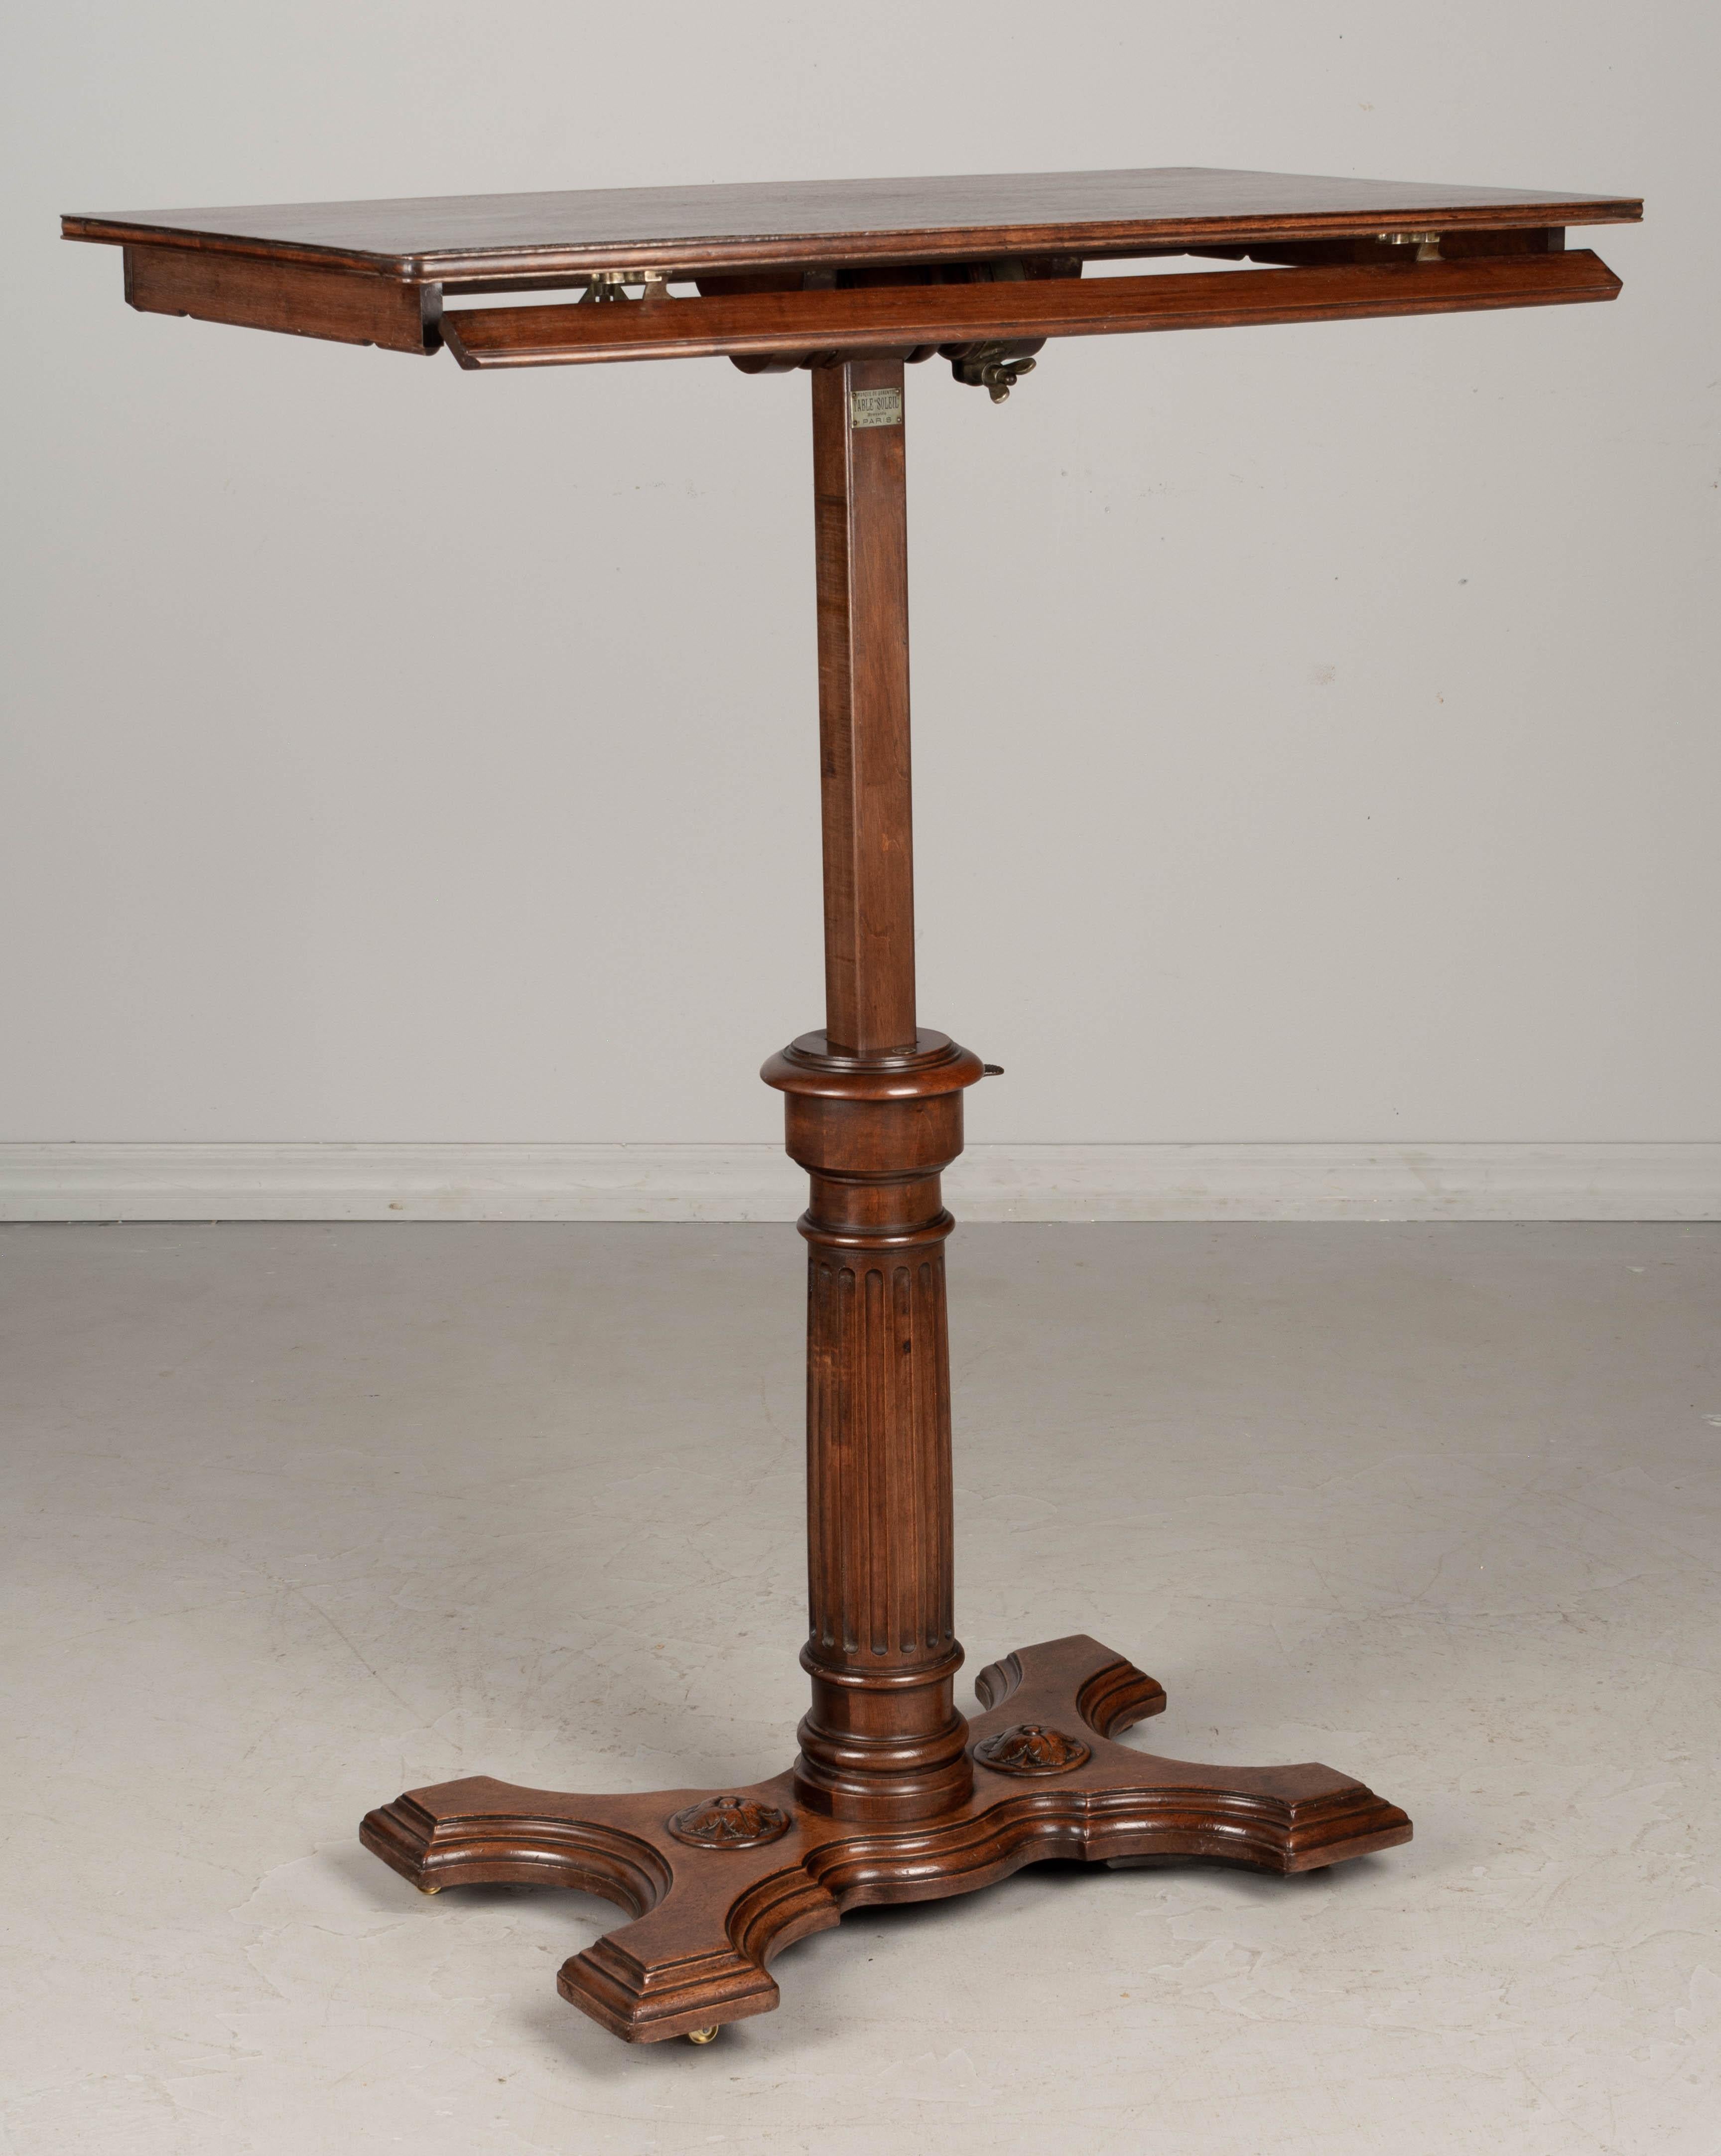 Verstellbarer Schreibtisch oder Staffelei aus dem 19. Jahrhundert (Gegossen)